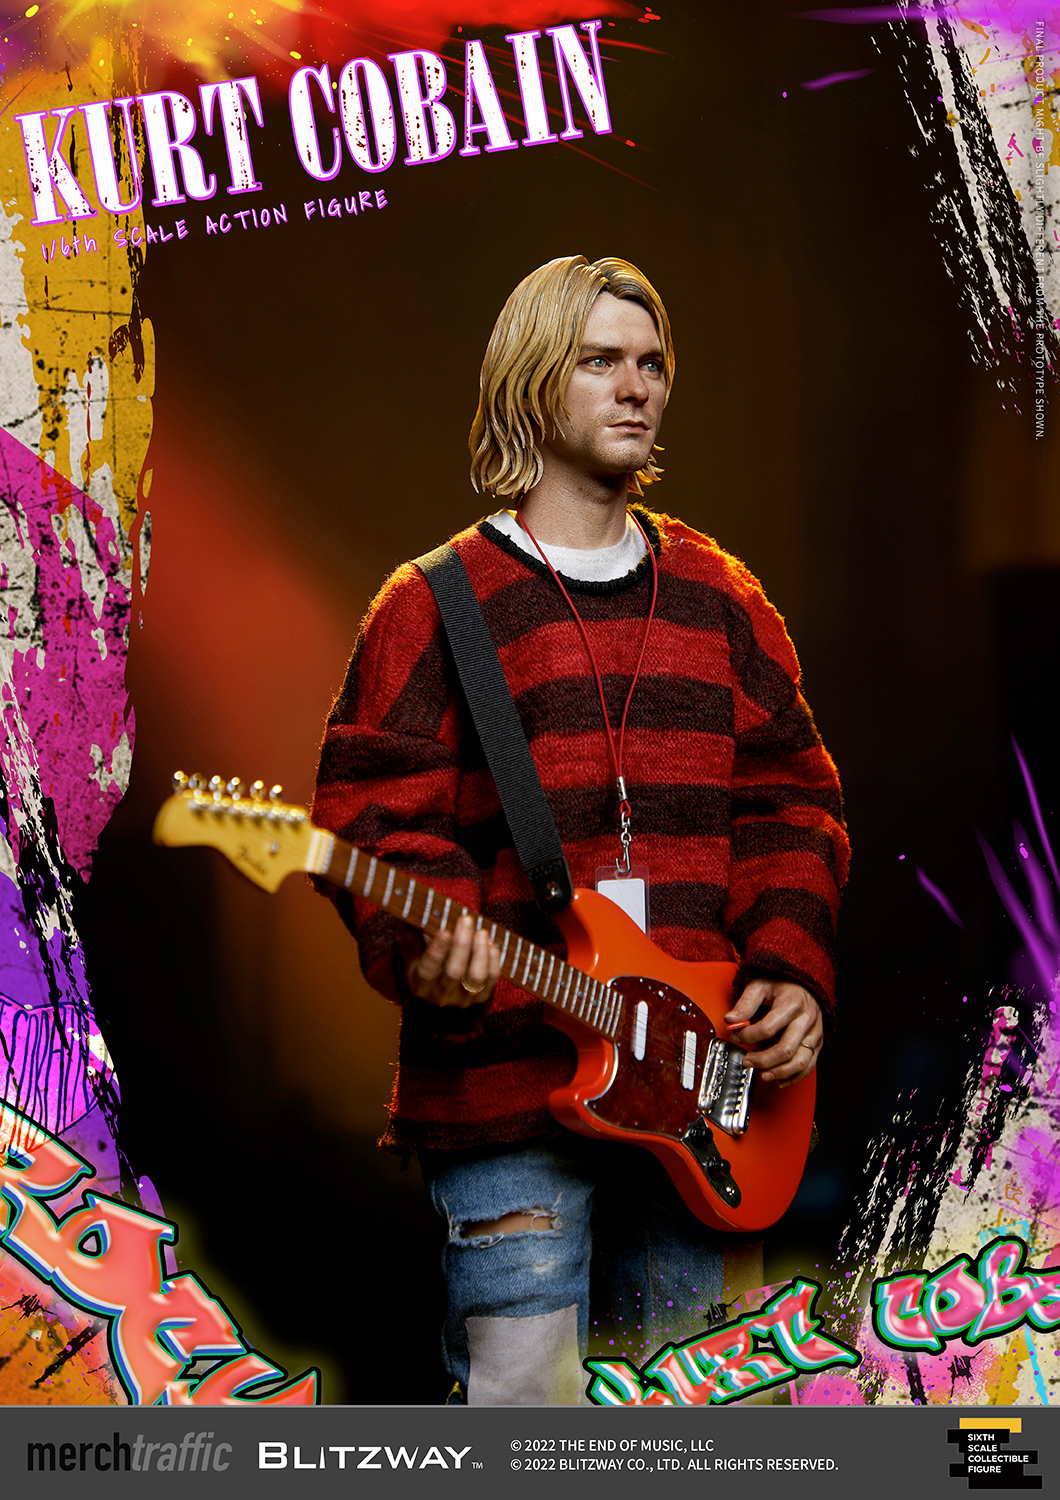 Kurt Cobain (Nirvana) Action Figure Perfeita em Escala 1:6 da Blitzway